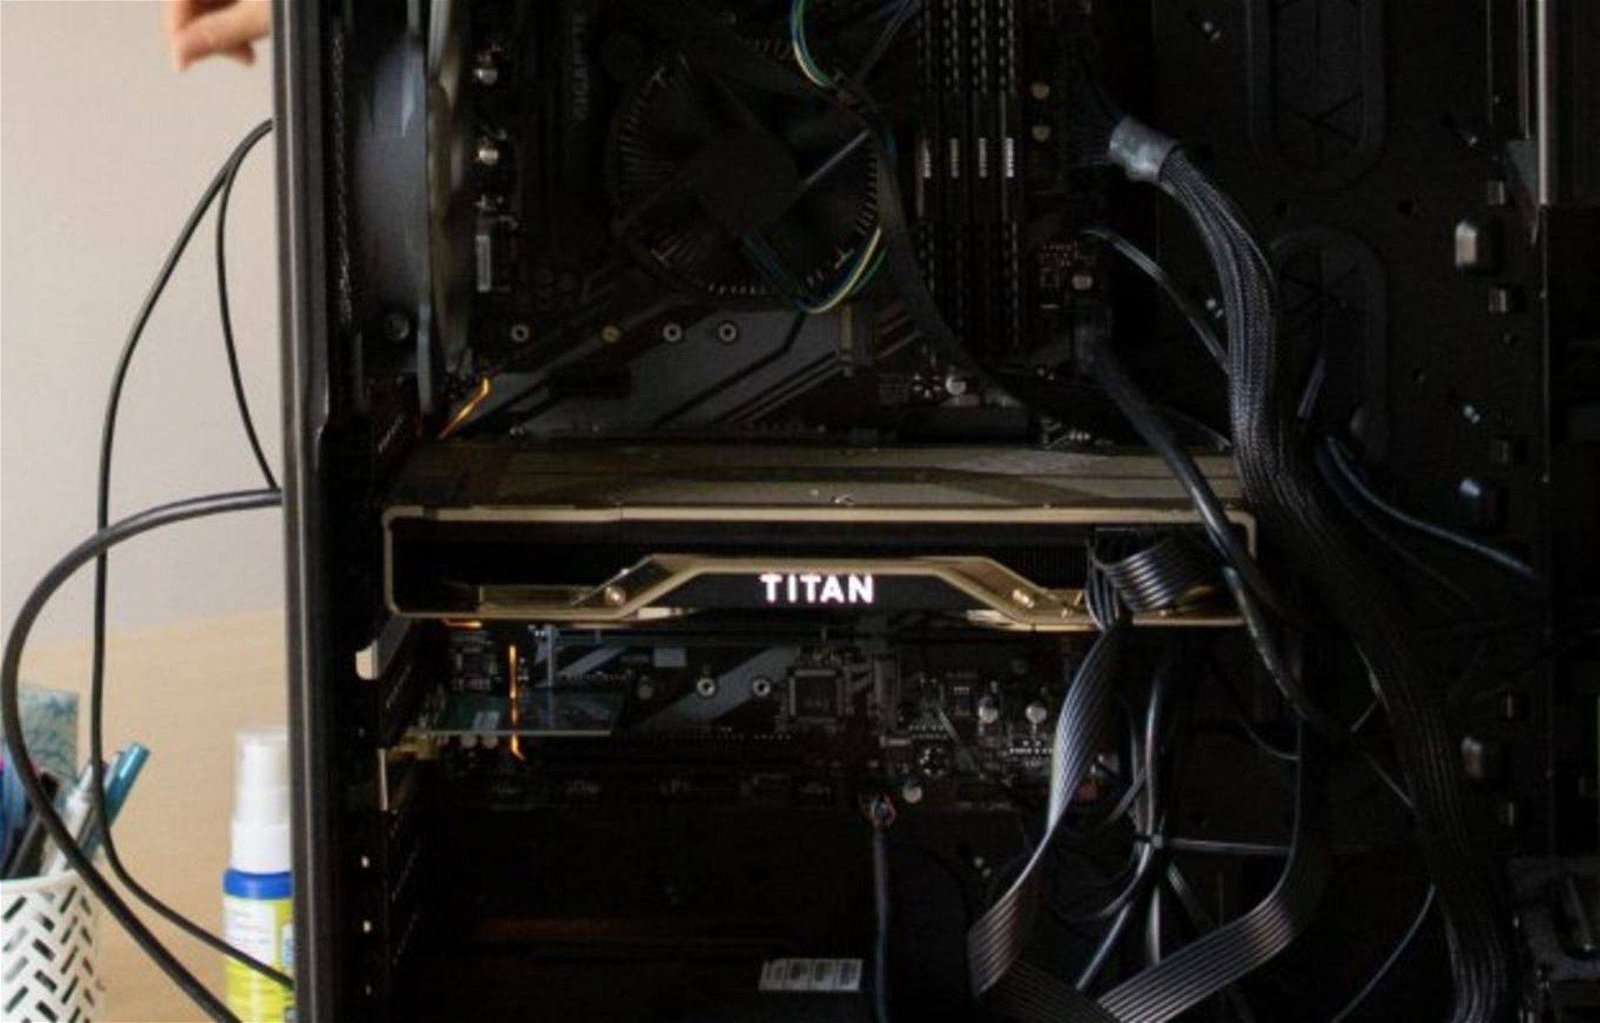 Immagine di Nvidia RTX Titan in arrivo? Le prime foto sui social network